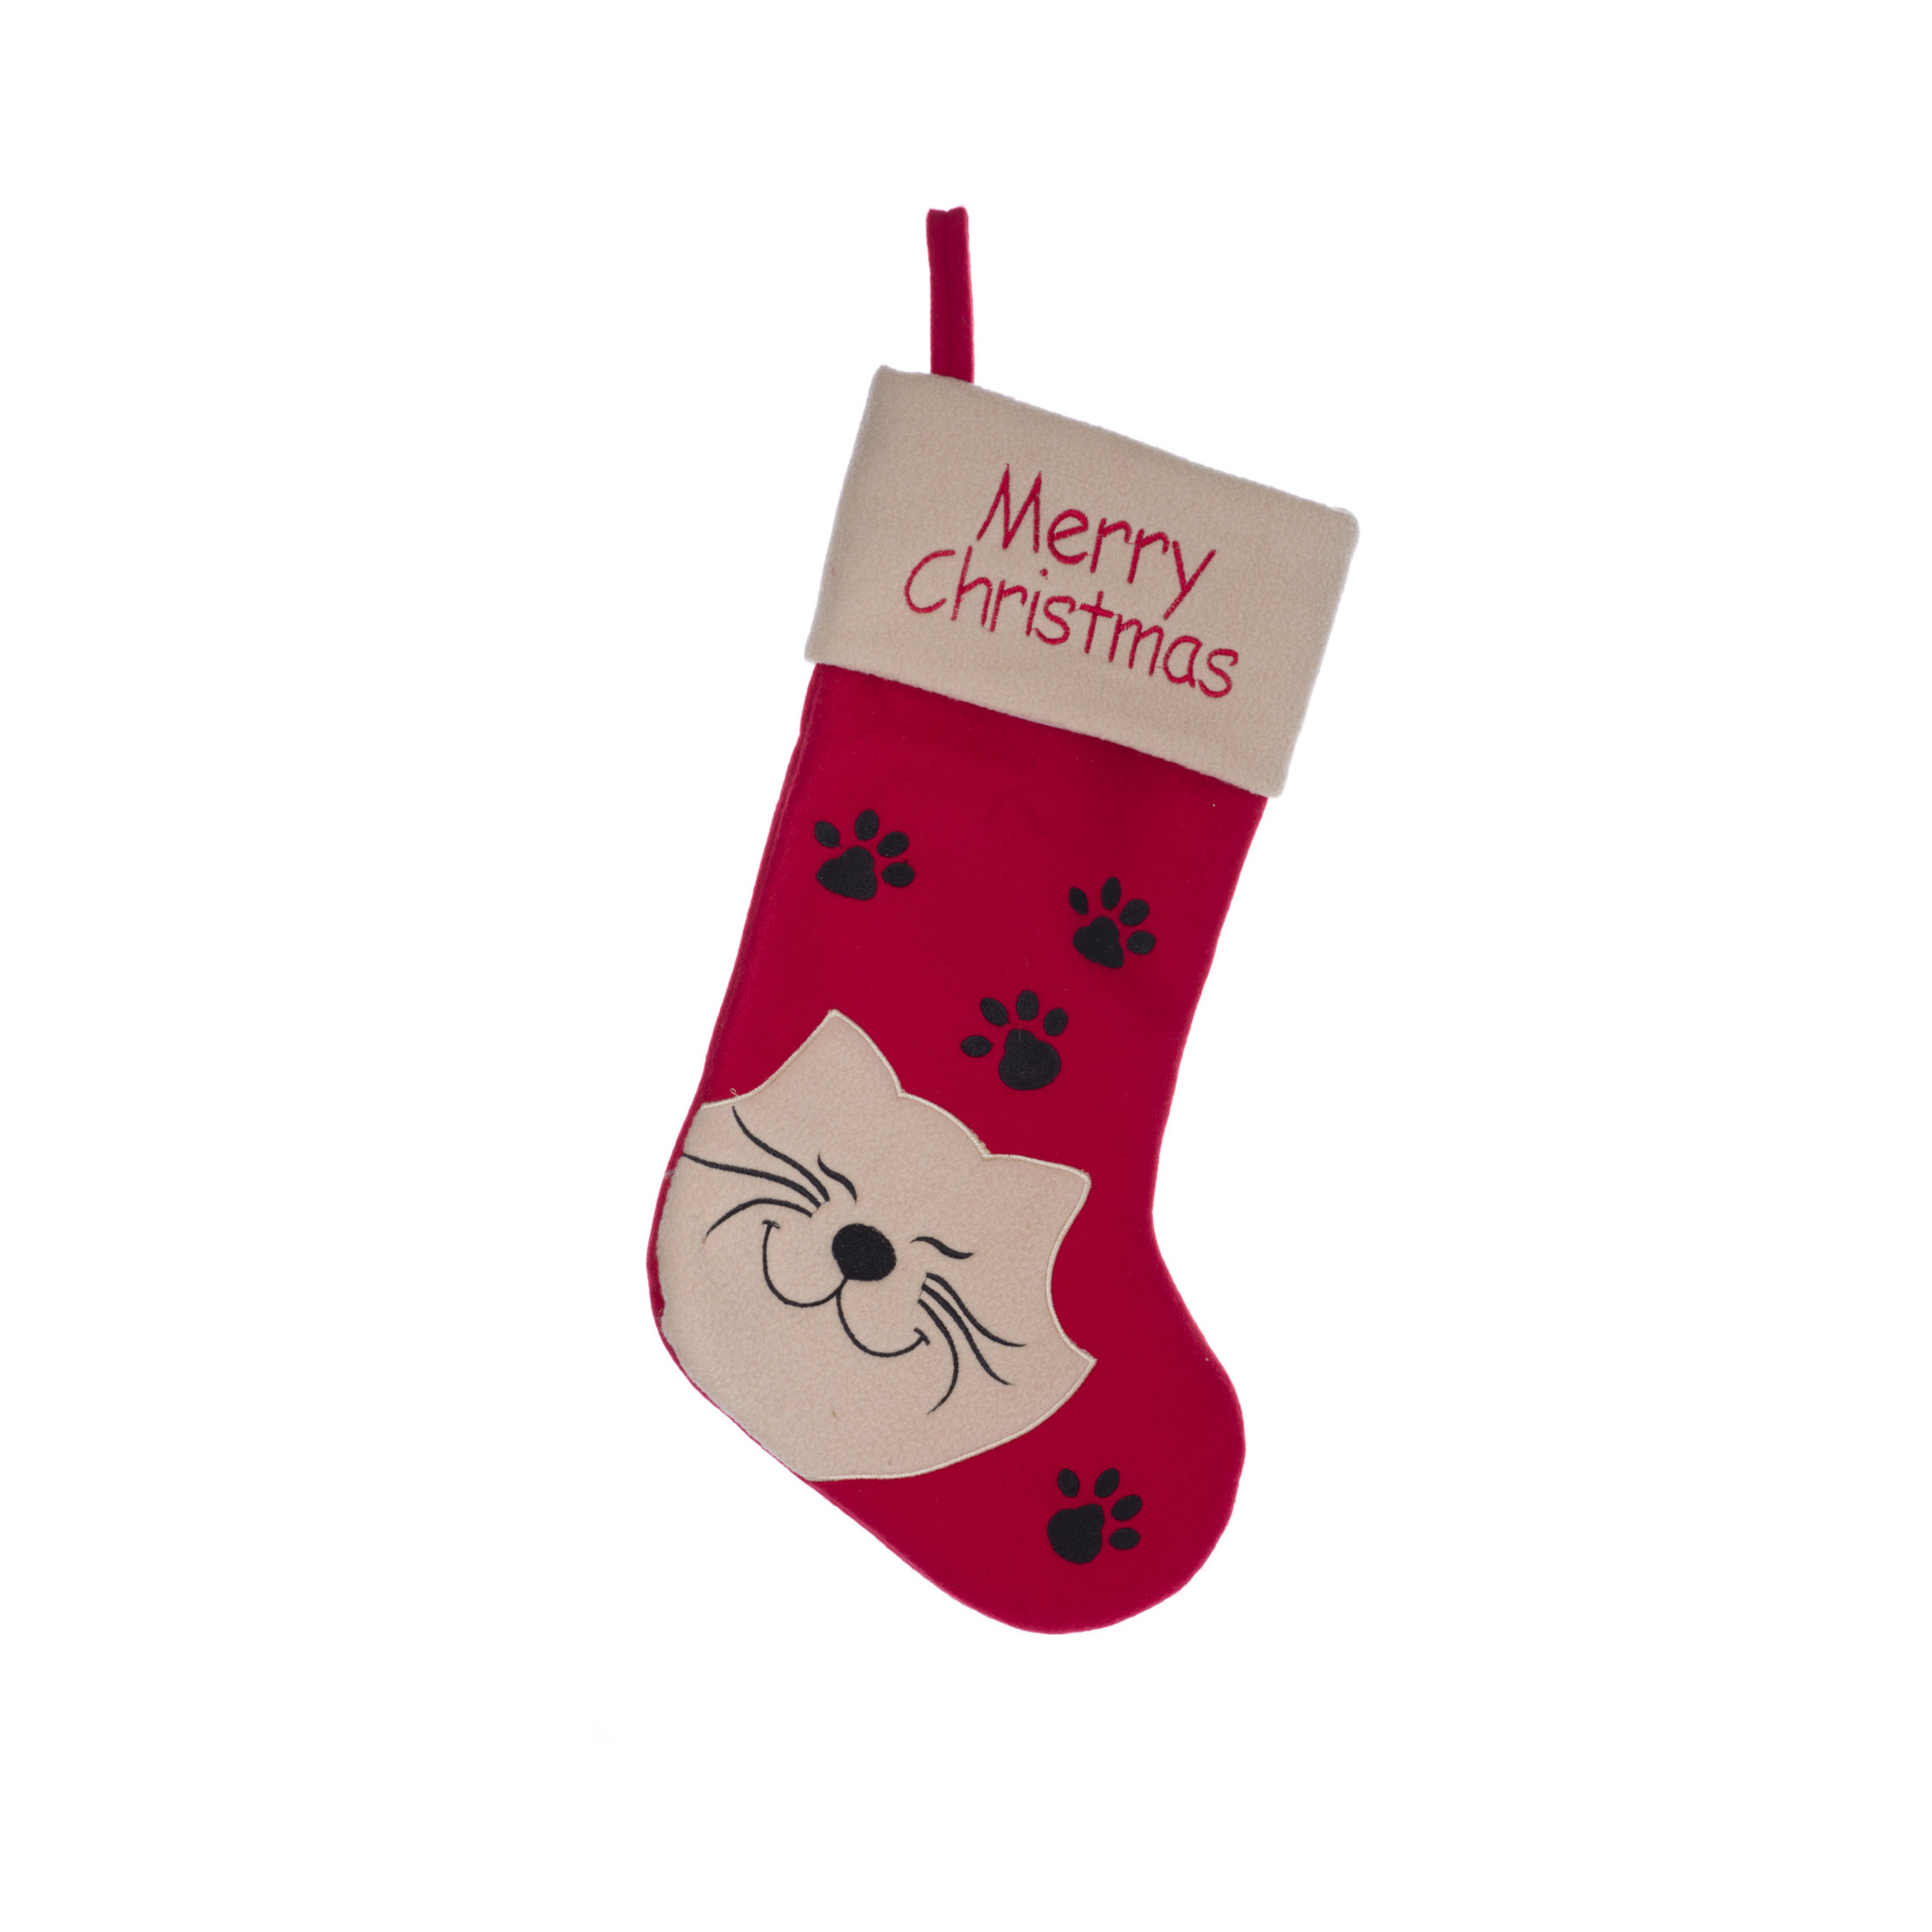 Kerstsok rood voor de kat-poes 19 cm kerstversiering-kerstdecoratie voor huisdieren